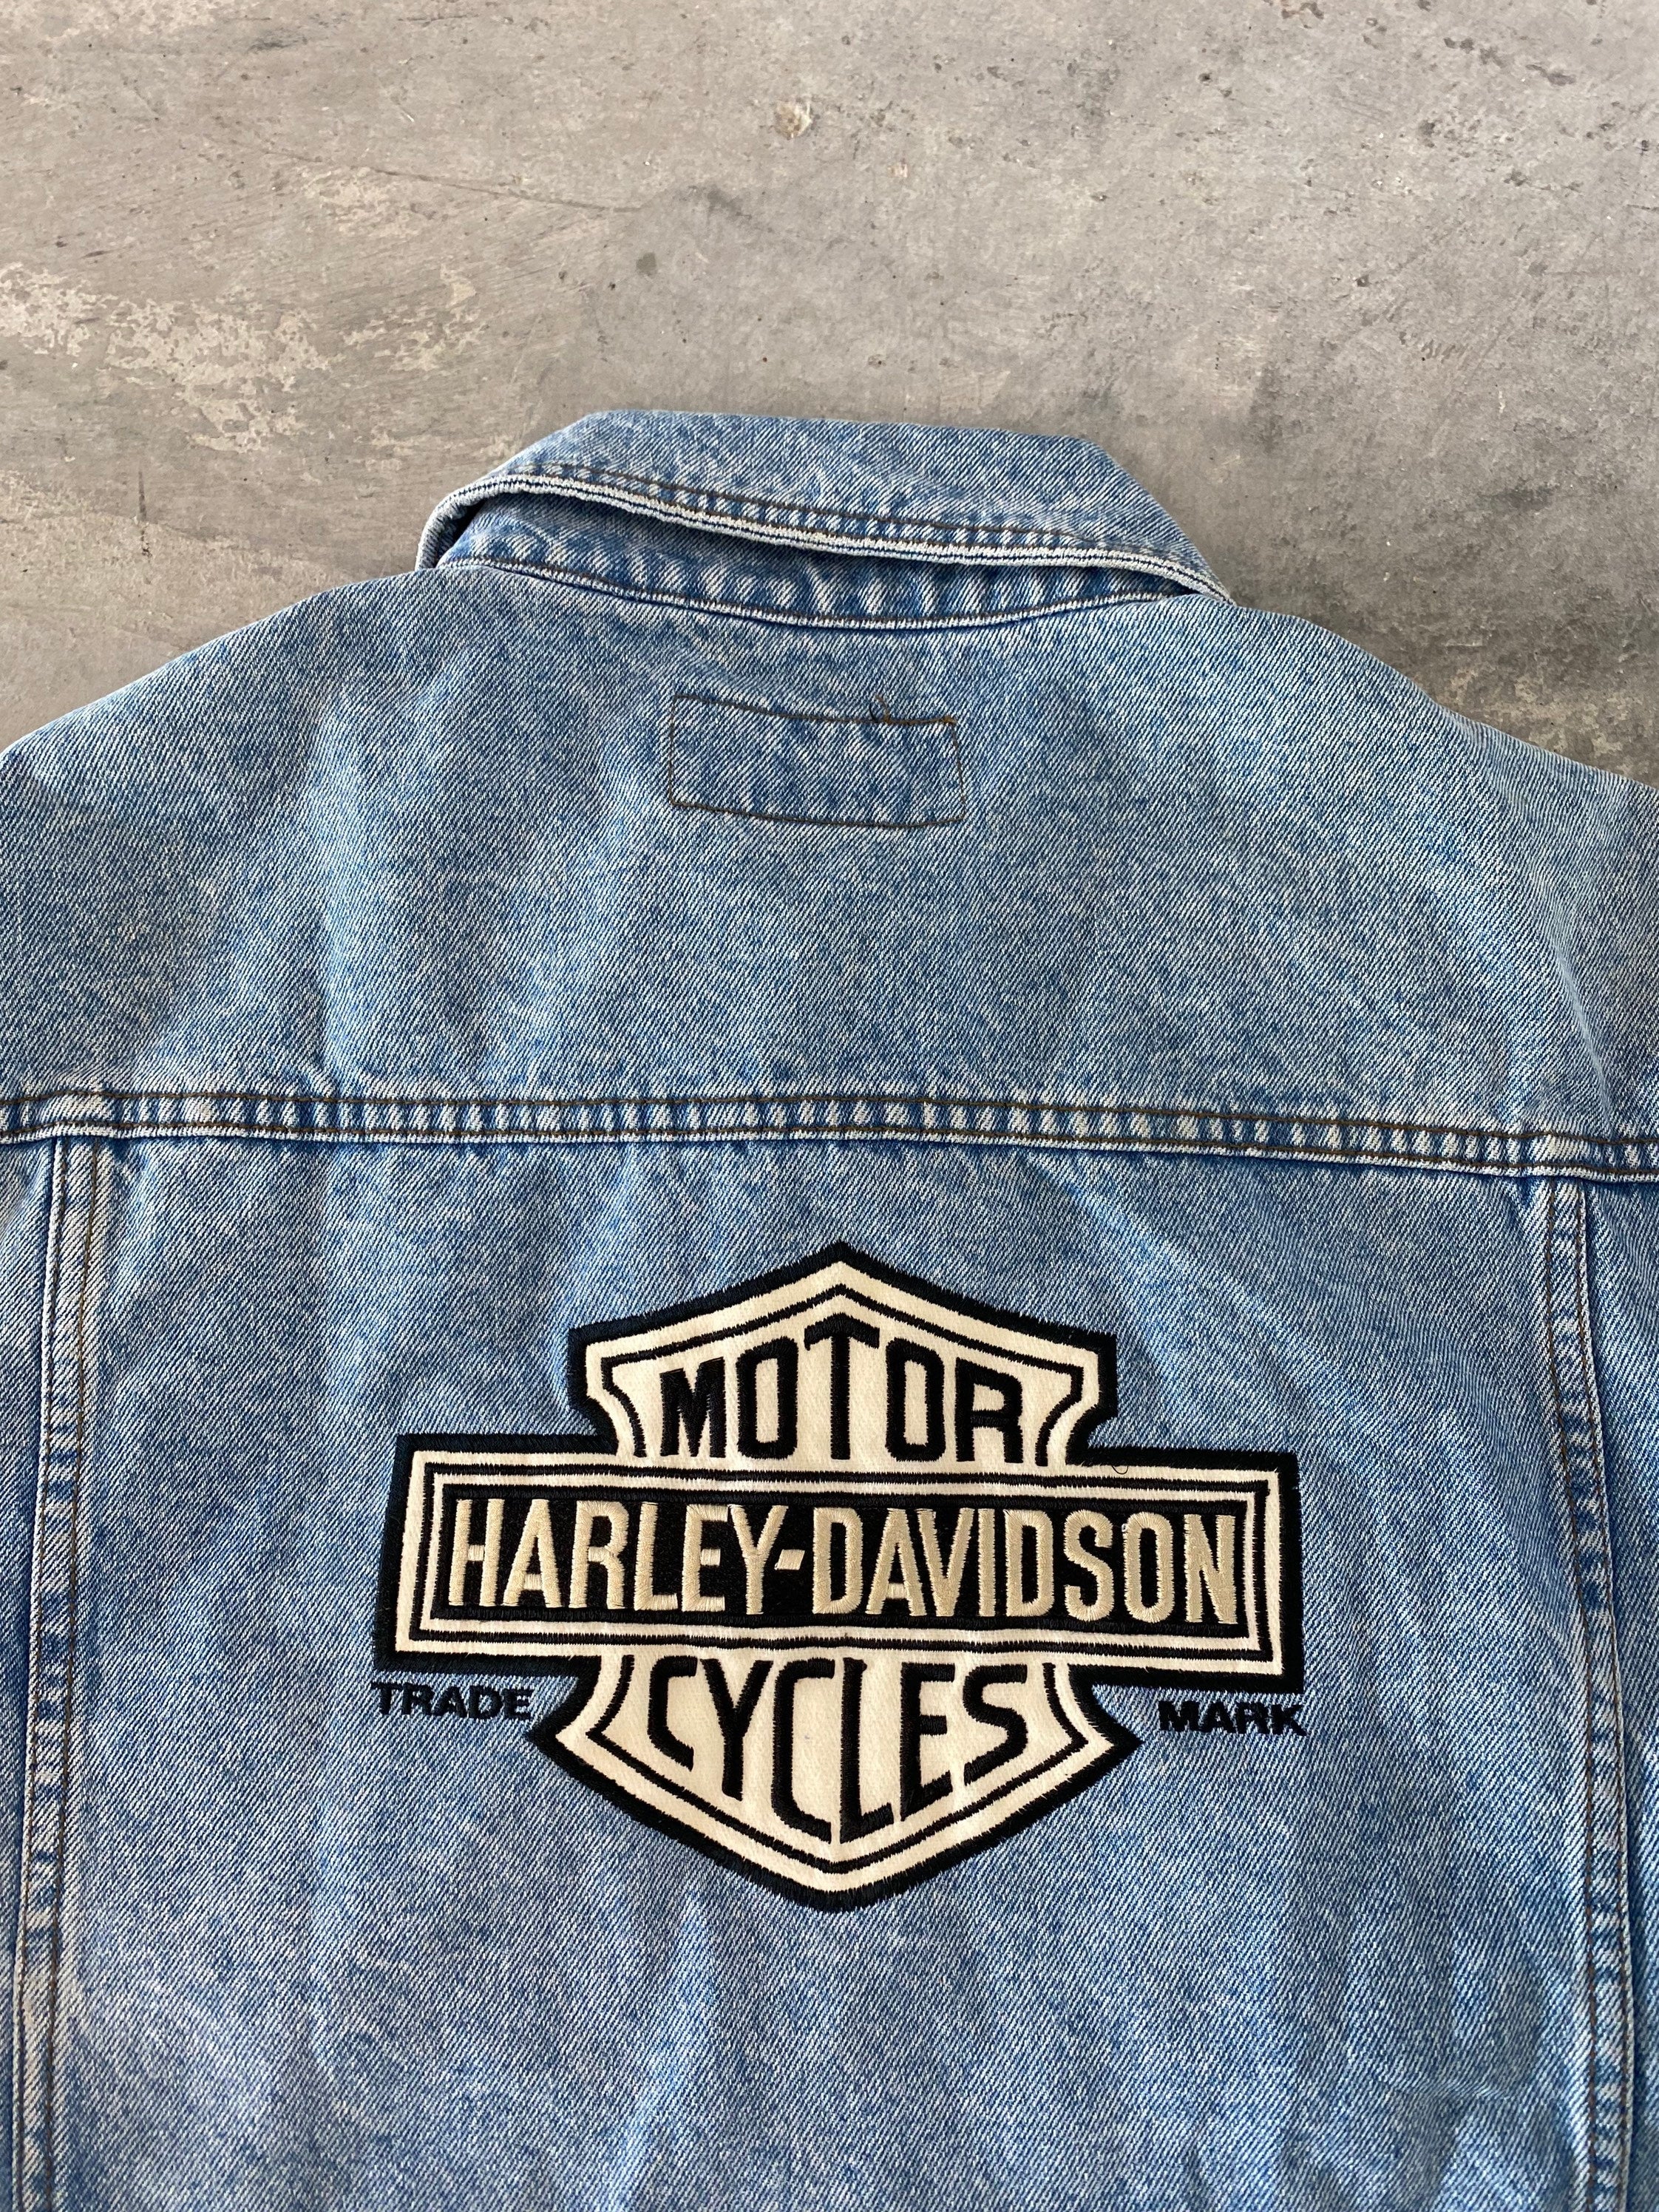 At læse Zeal Trække på Vintage Harley Davidson Jean Jacket Size Medium – Thrift Sh!t Vintage